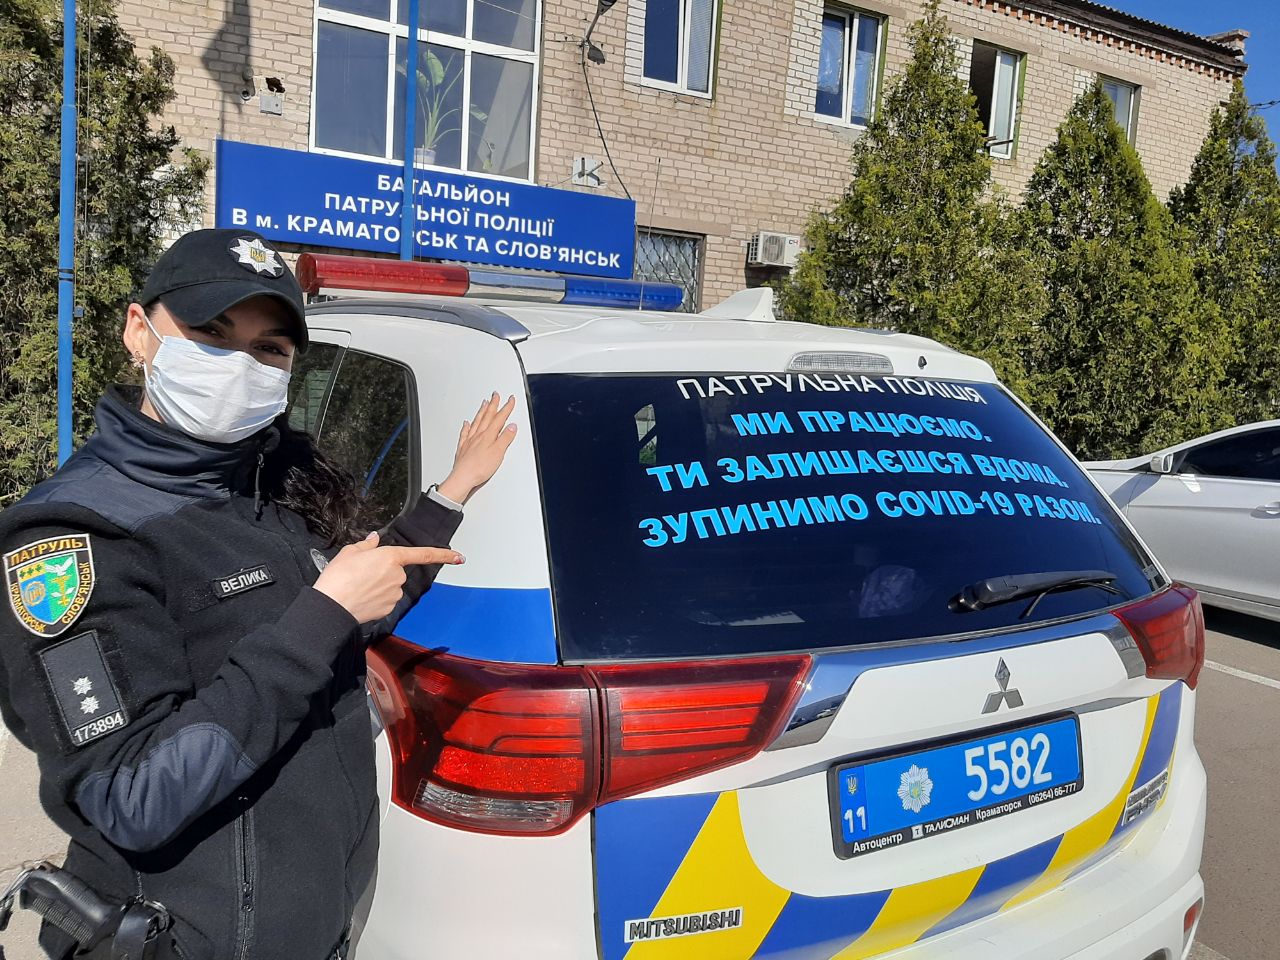 Як проходить карантин у патрульної: історія поліцейської з Донбасу